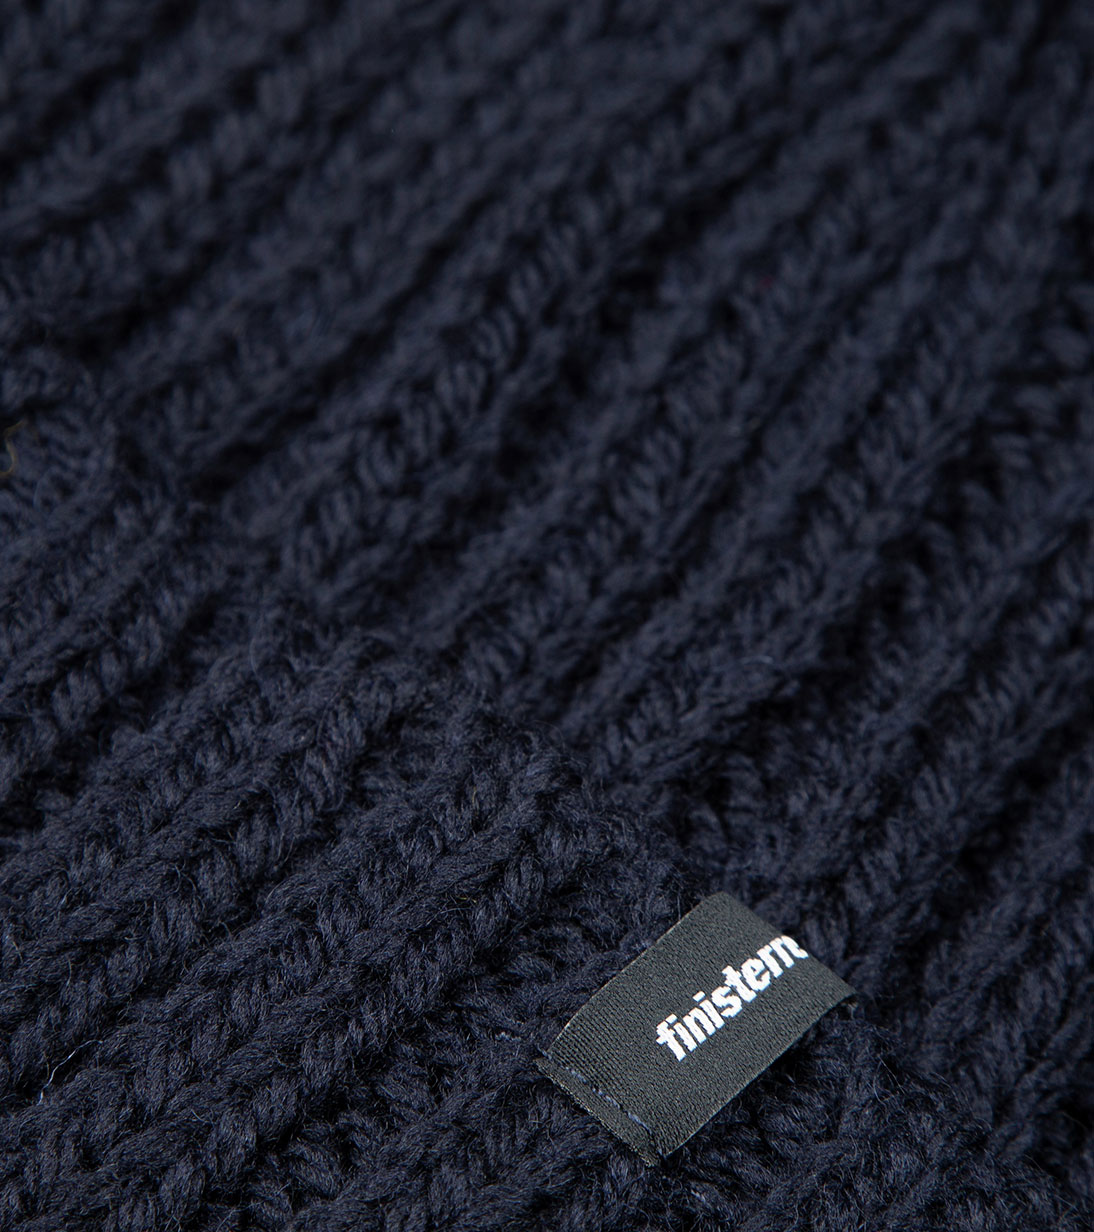 Made from: 100% tonal Merino wool